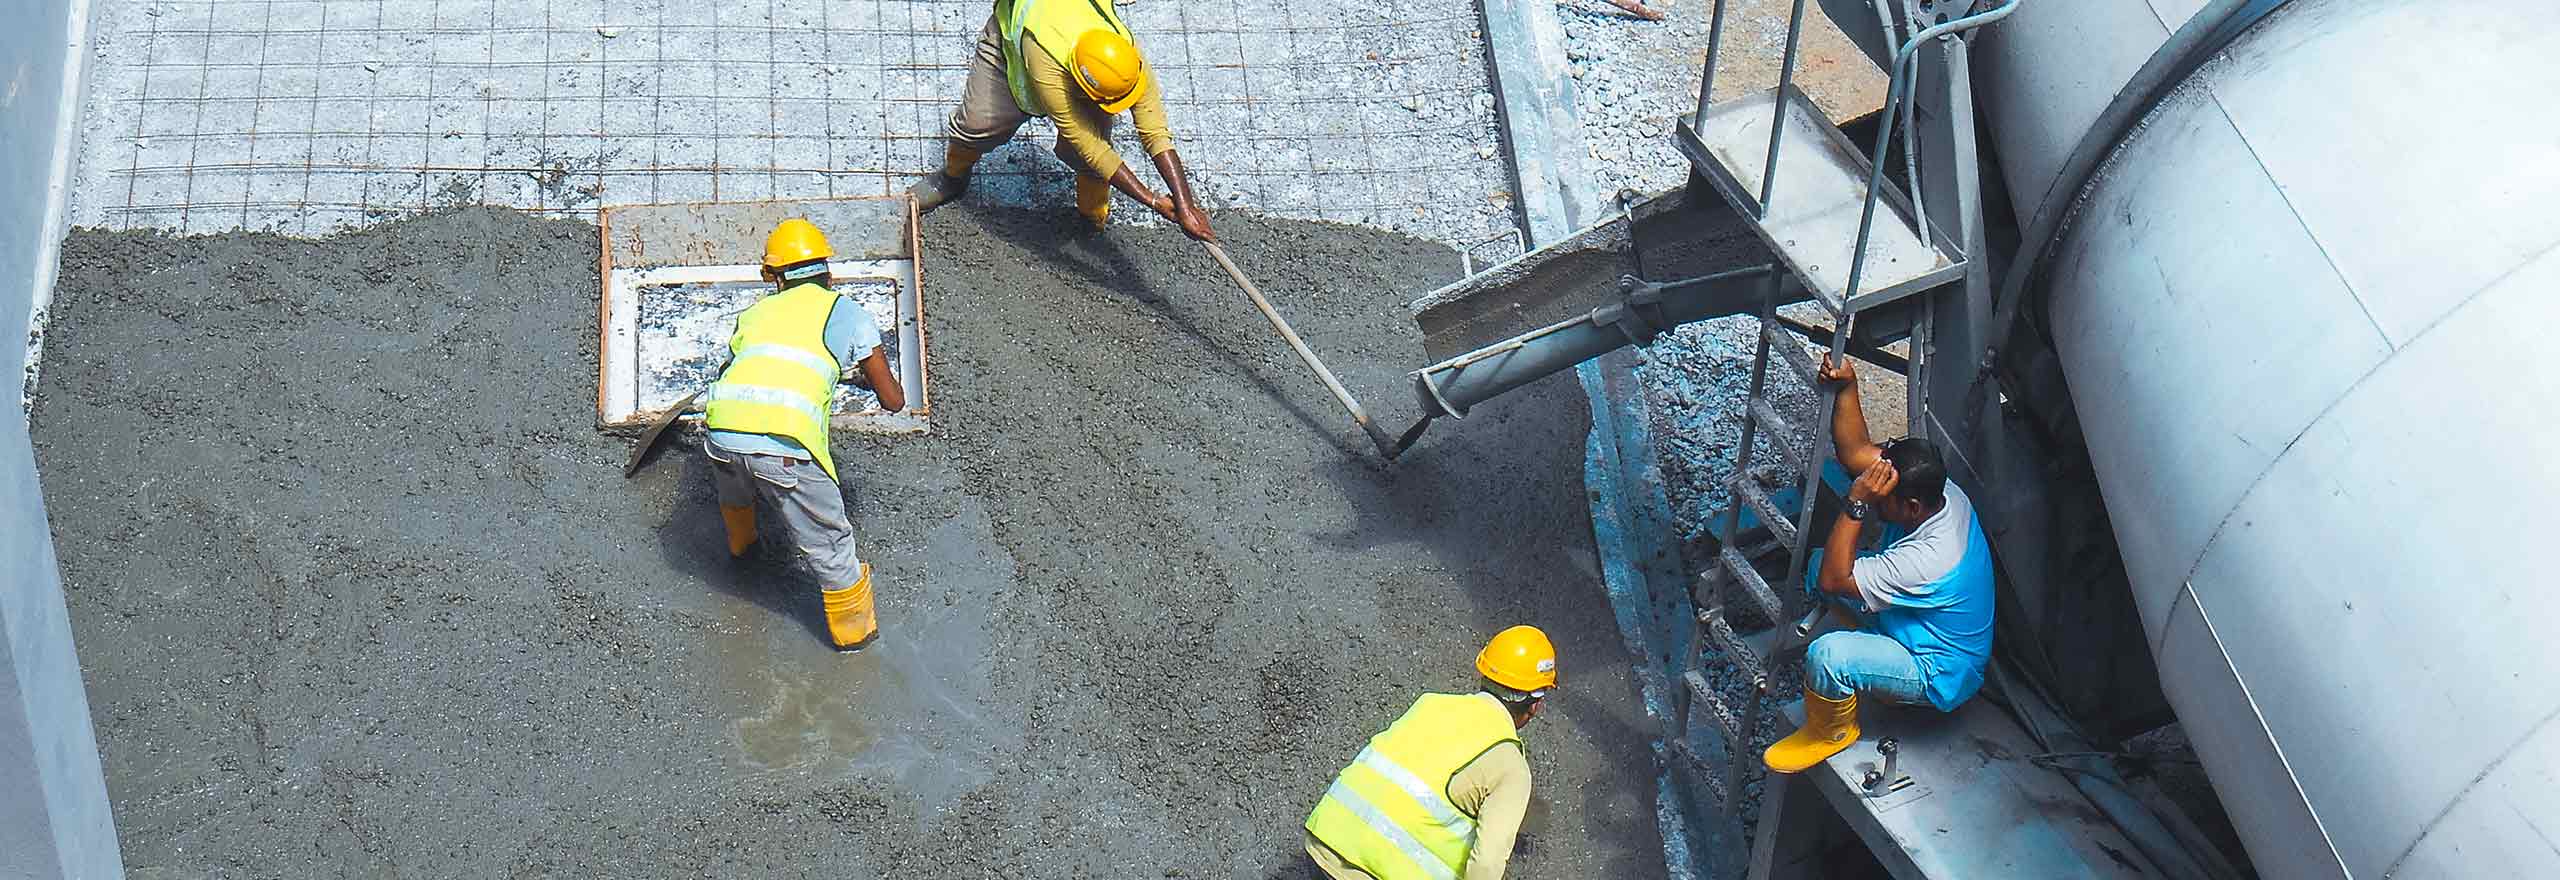 Trabalhadores da construção usando uma variedade de equipamentos para despejar e alisar uma seção de laje de concreto.